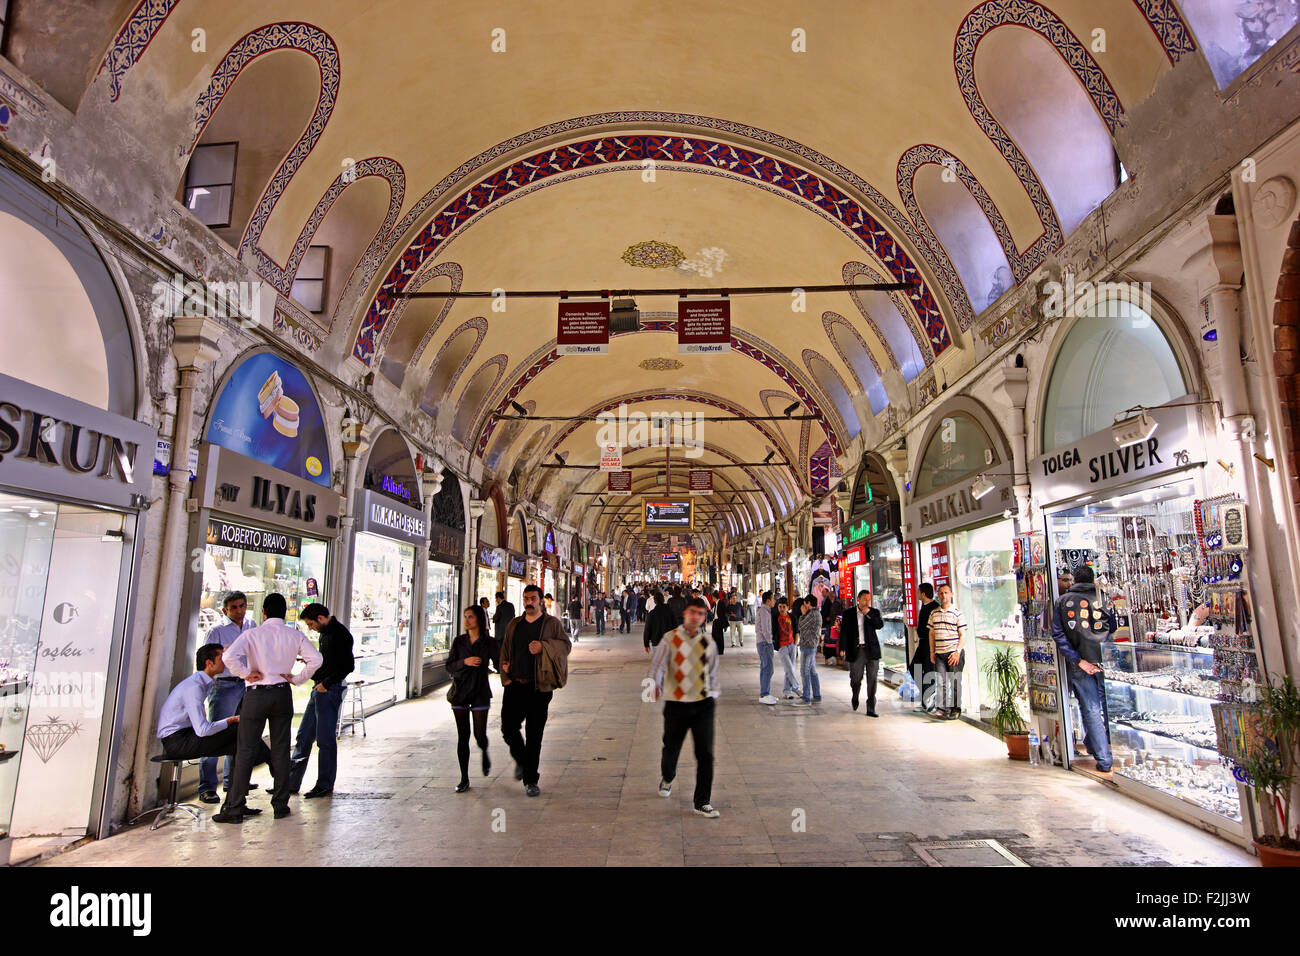 Kapali Carsi (signifie "Marché couvert"), le Grand Bazar d'Istanbul, l'un des principaux sites touristiques de cette magnifique ville. La Turquie Banque D'Images